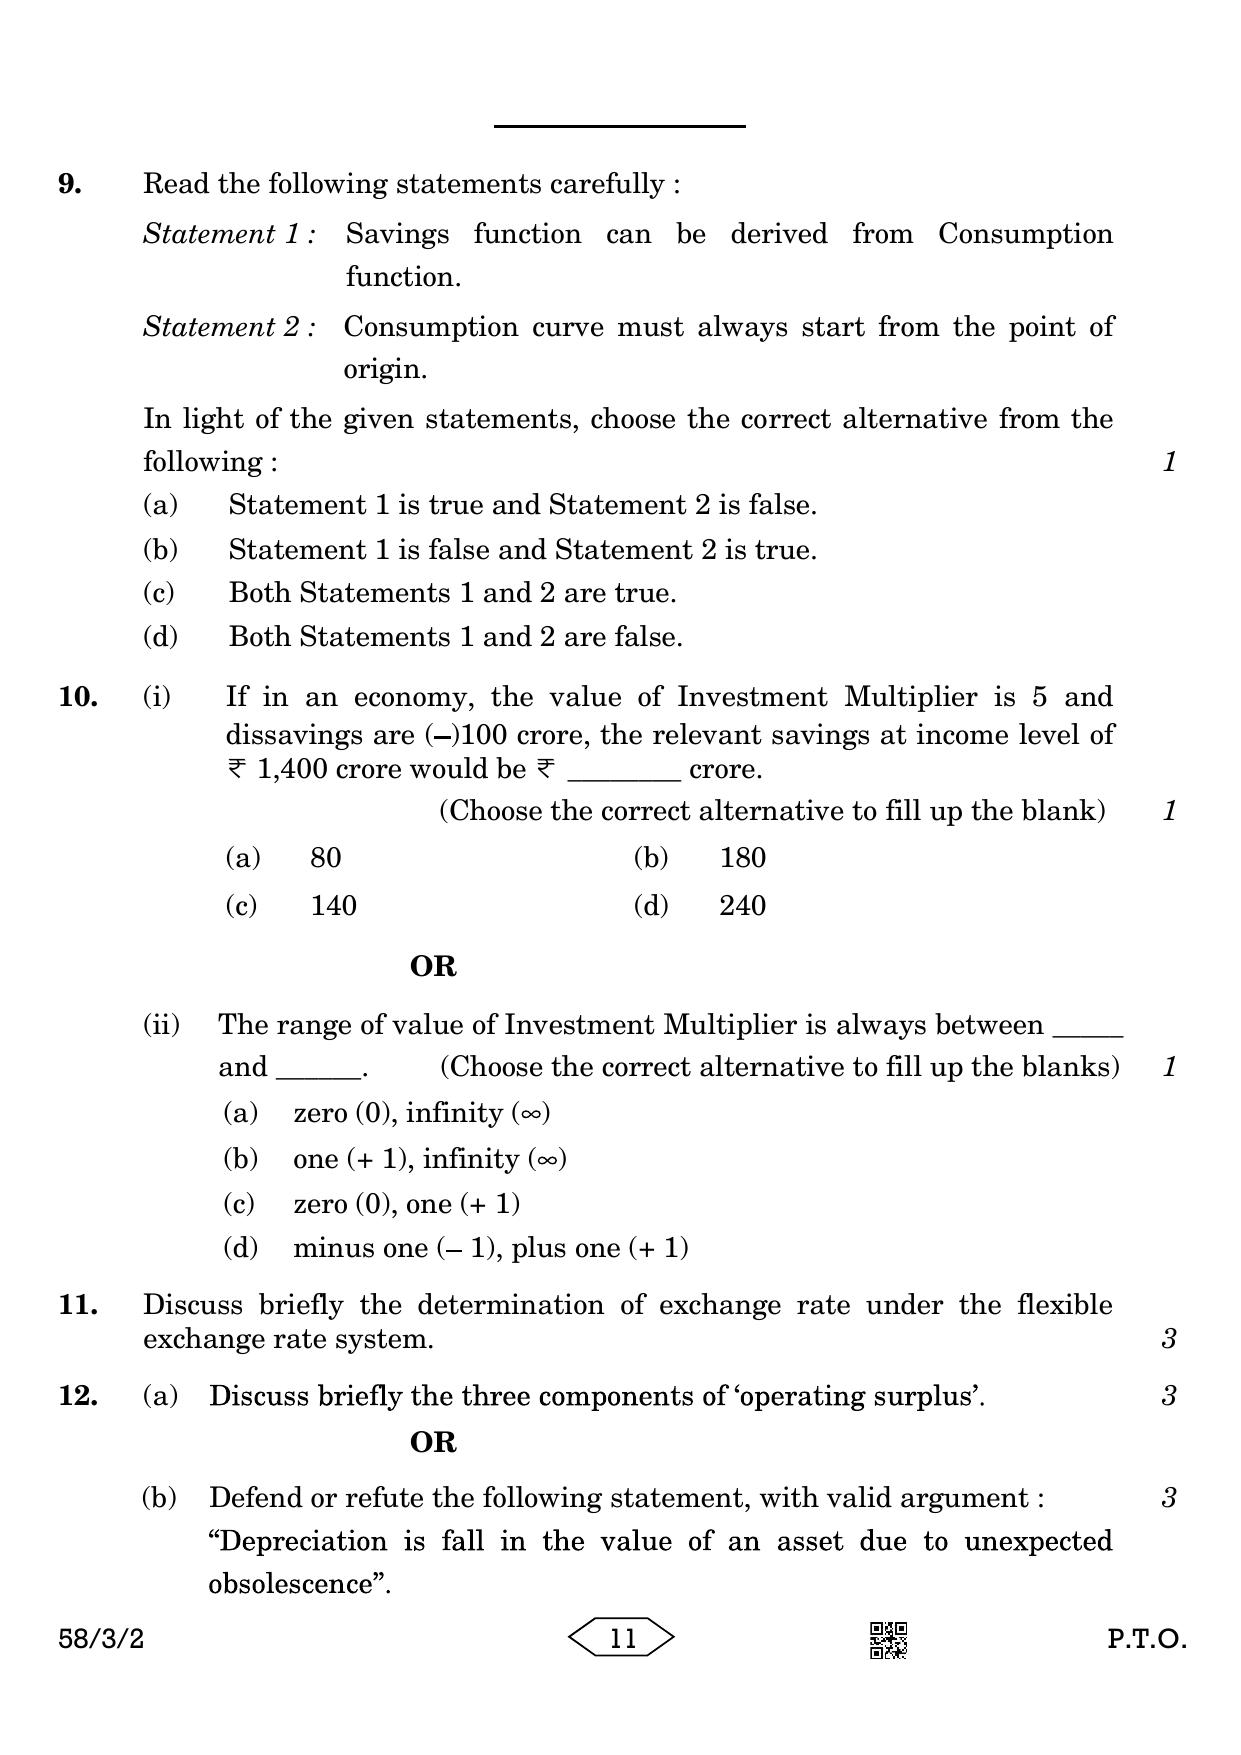 CBSE Class 12 58-3-2 Economics 2023 Question Paper - Page 11